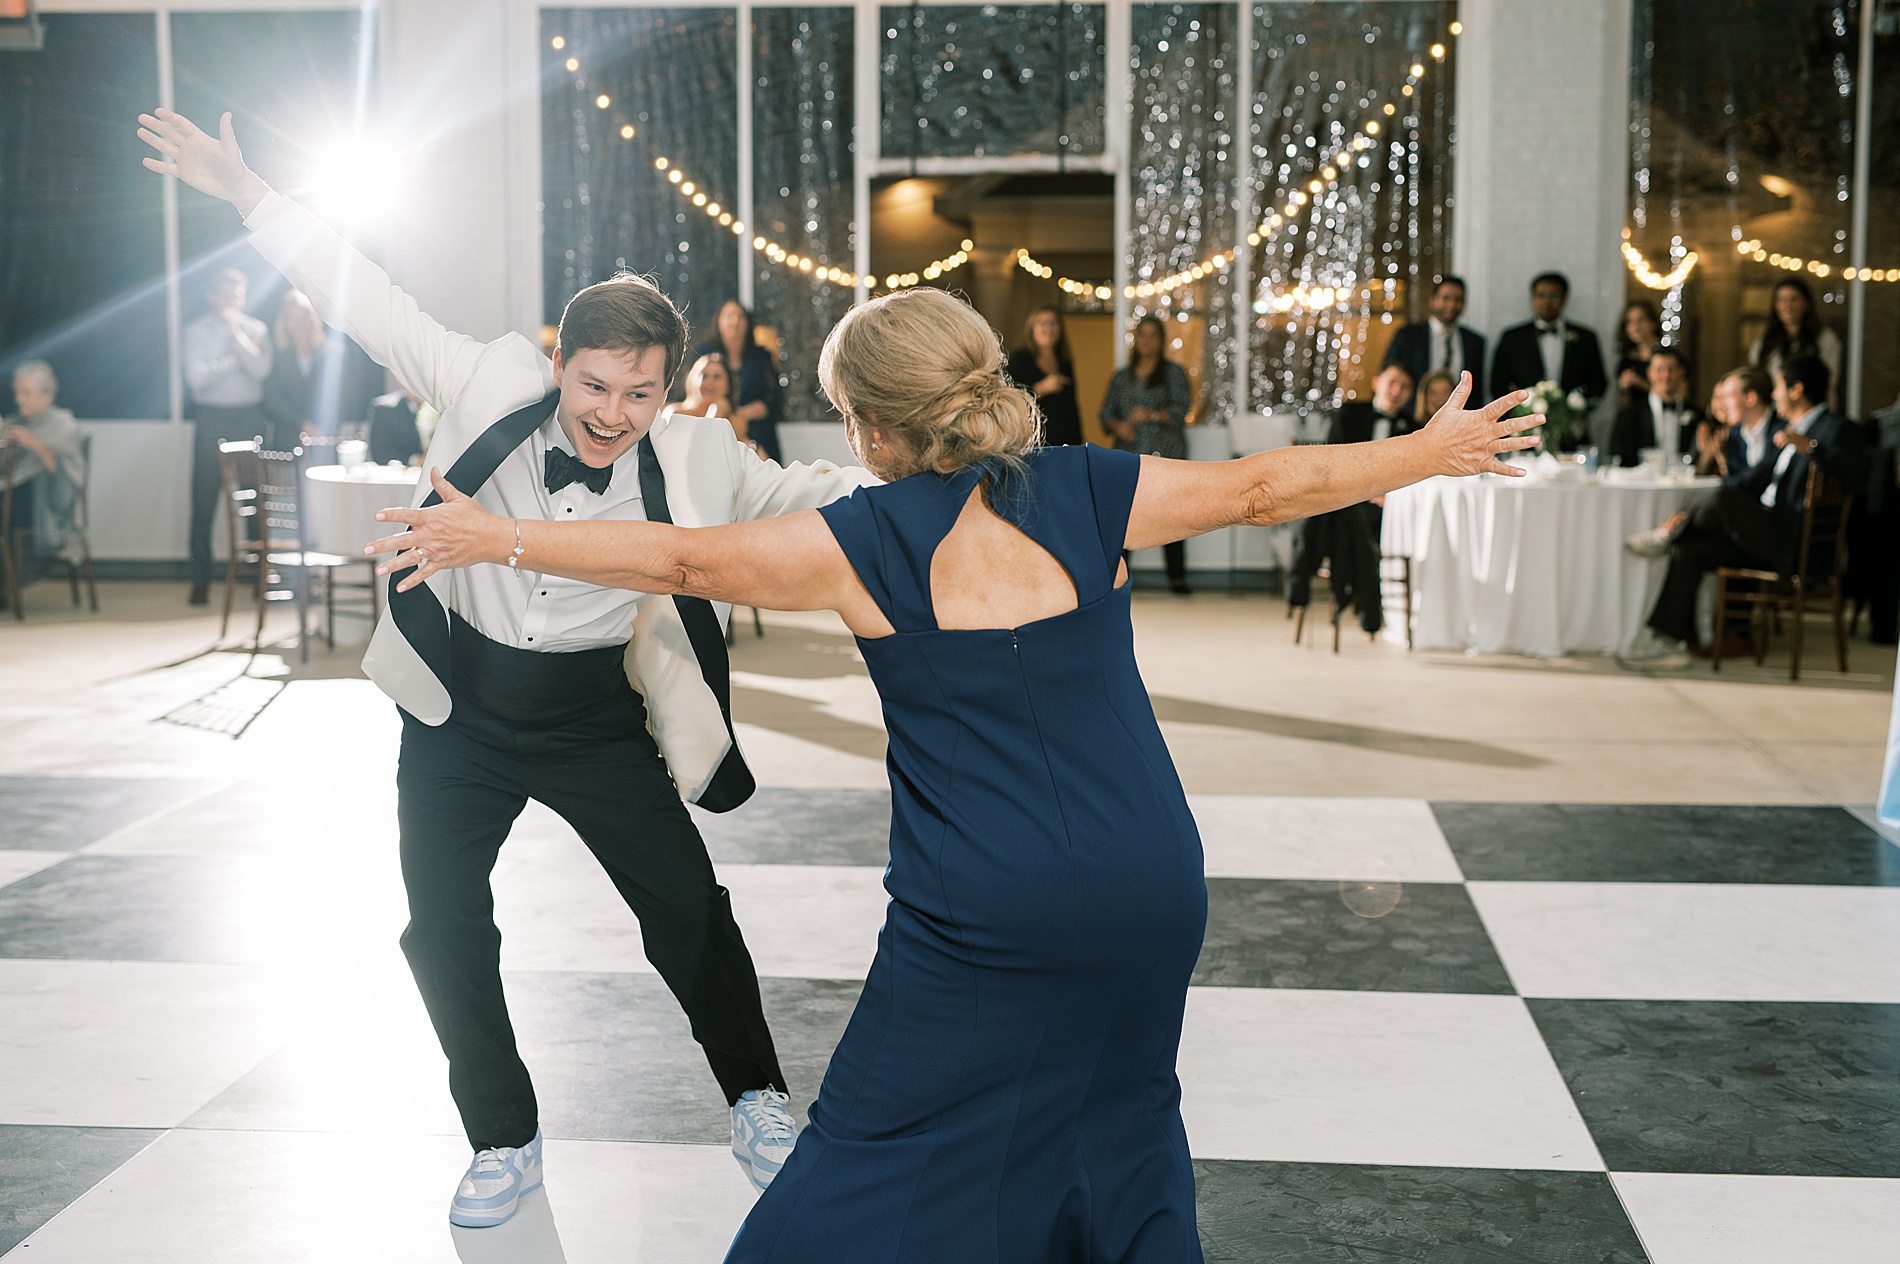 fun dance between groom and mother